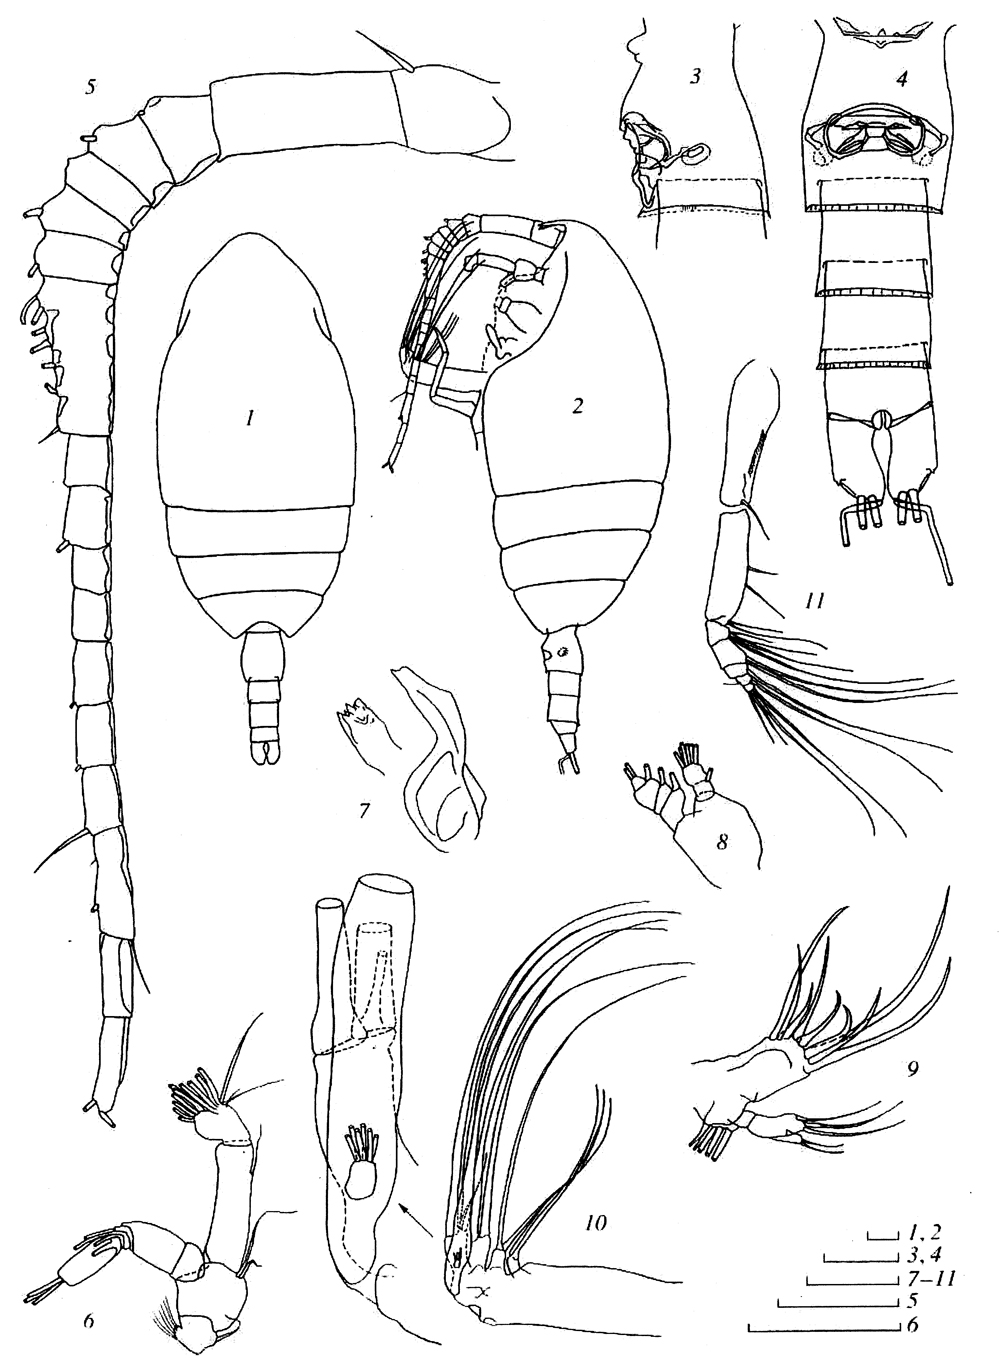 Espce Bradfordiella kurchatovi - Planche 1 de figures morphologiques